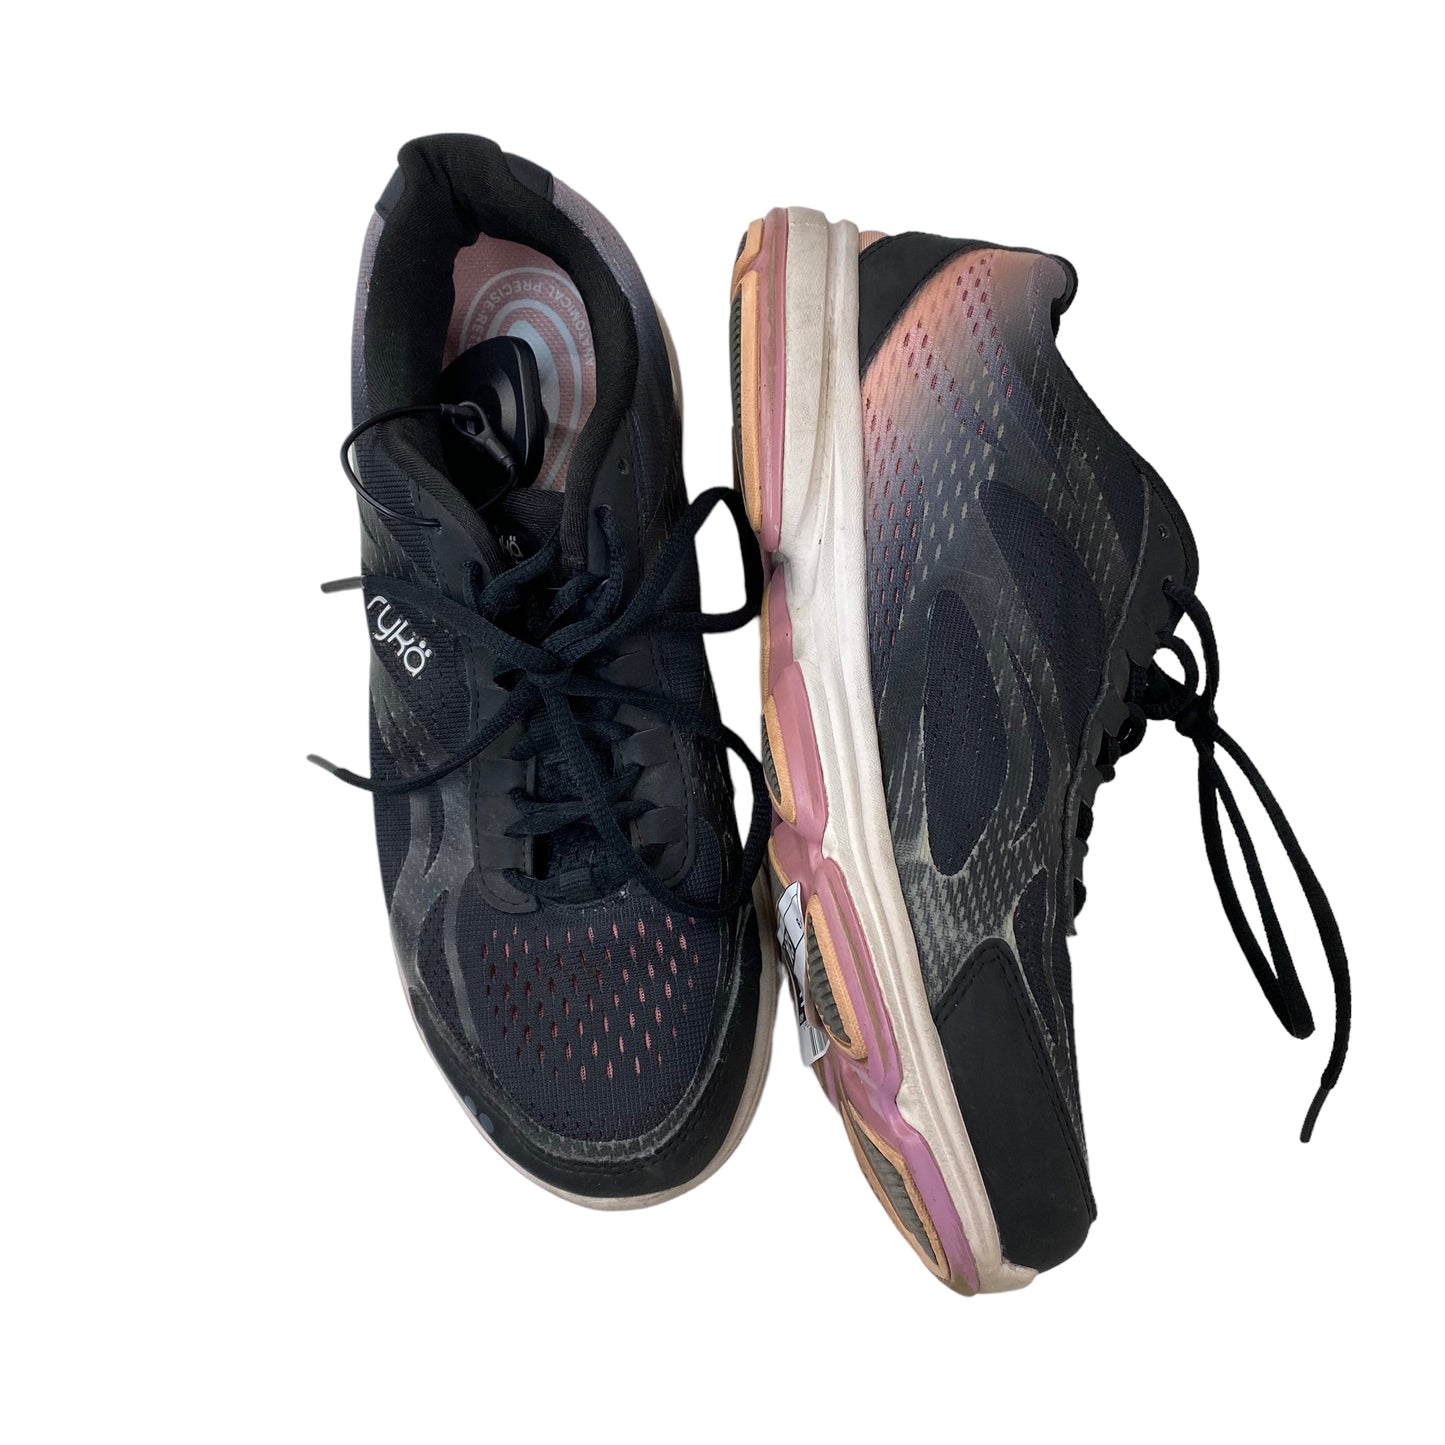 Black Shoes Athletic Ryka, Size 8